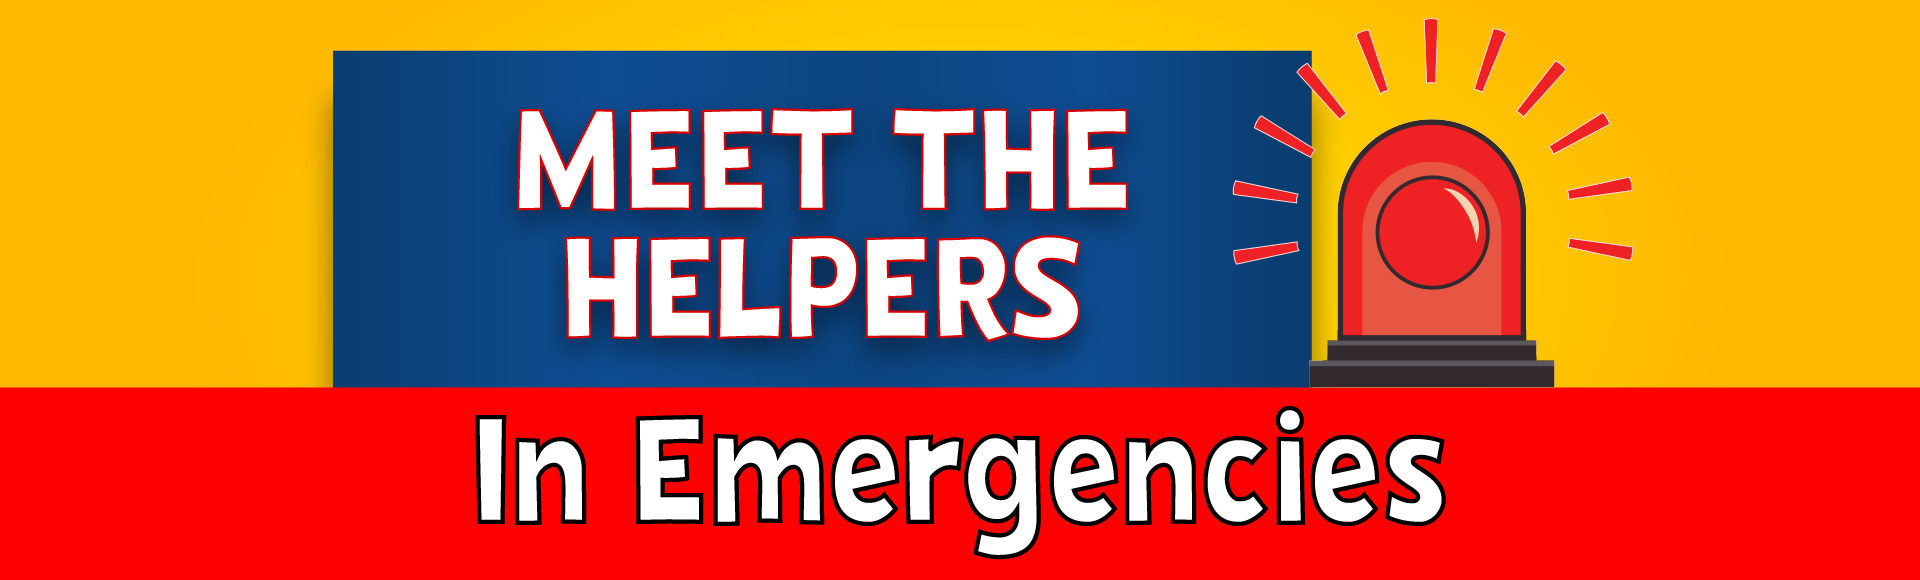 Meet The Helpers in Emergencies